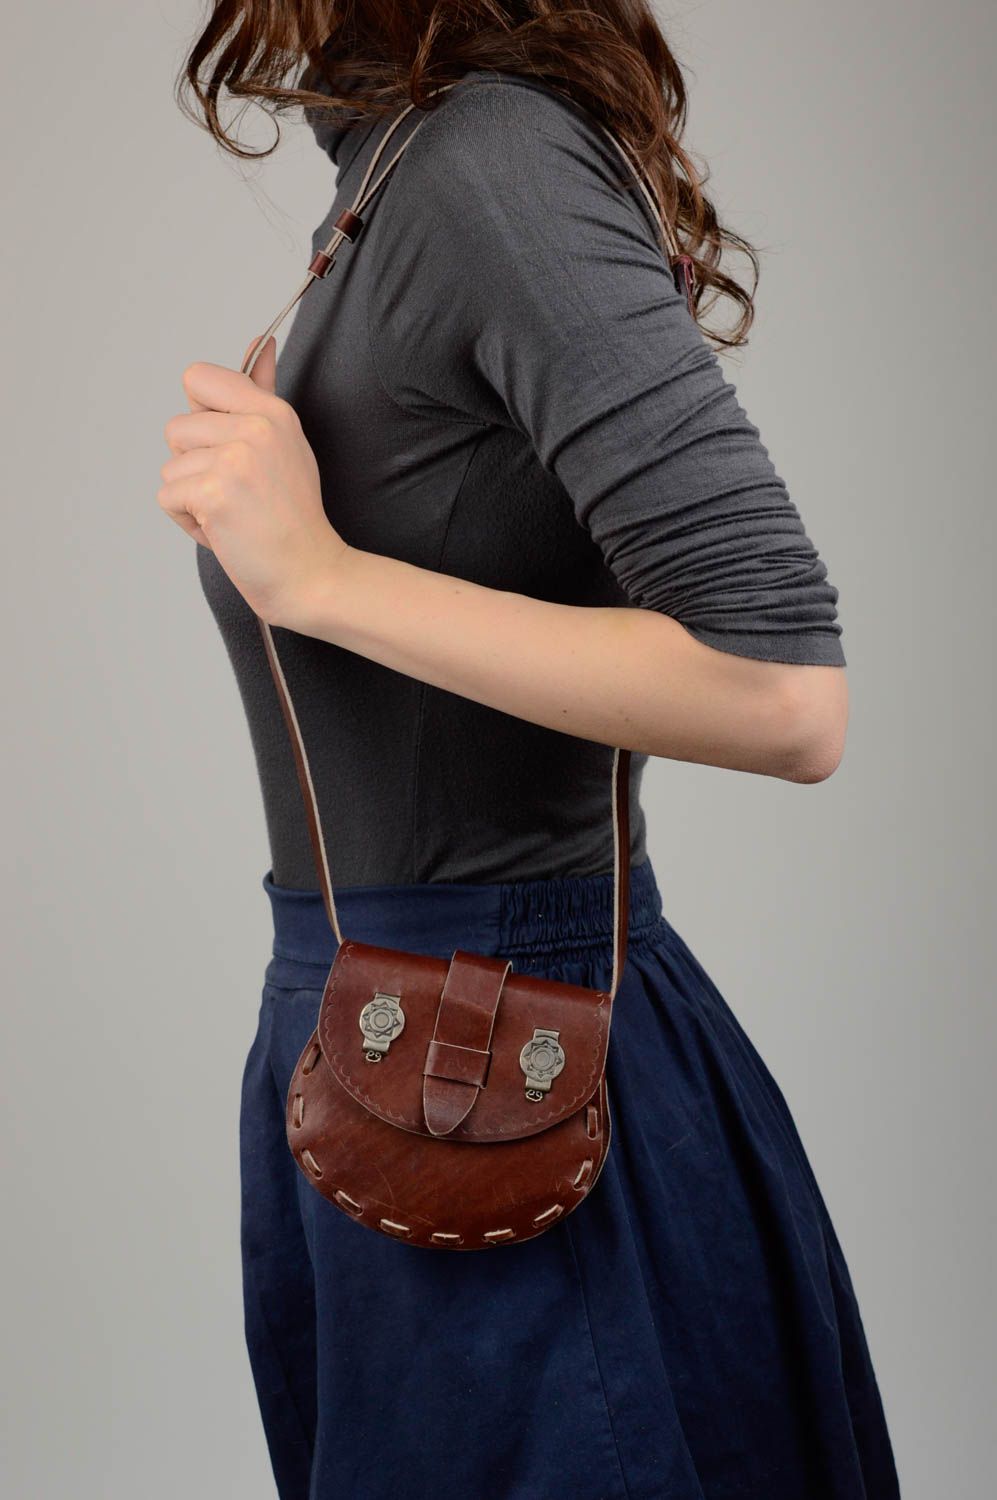 Коричневая сумка ручной работы сумка через плечо авторская кожаная сумка женская фото 2